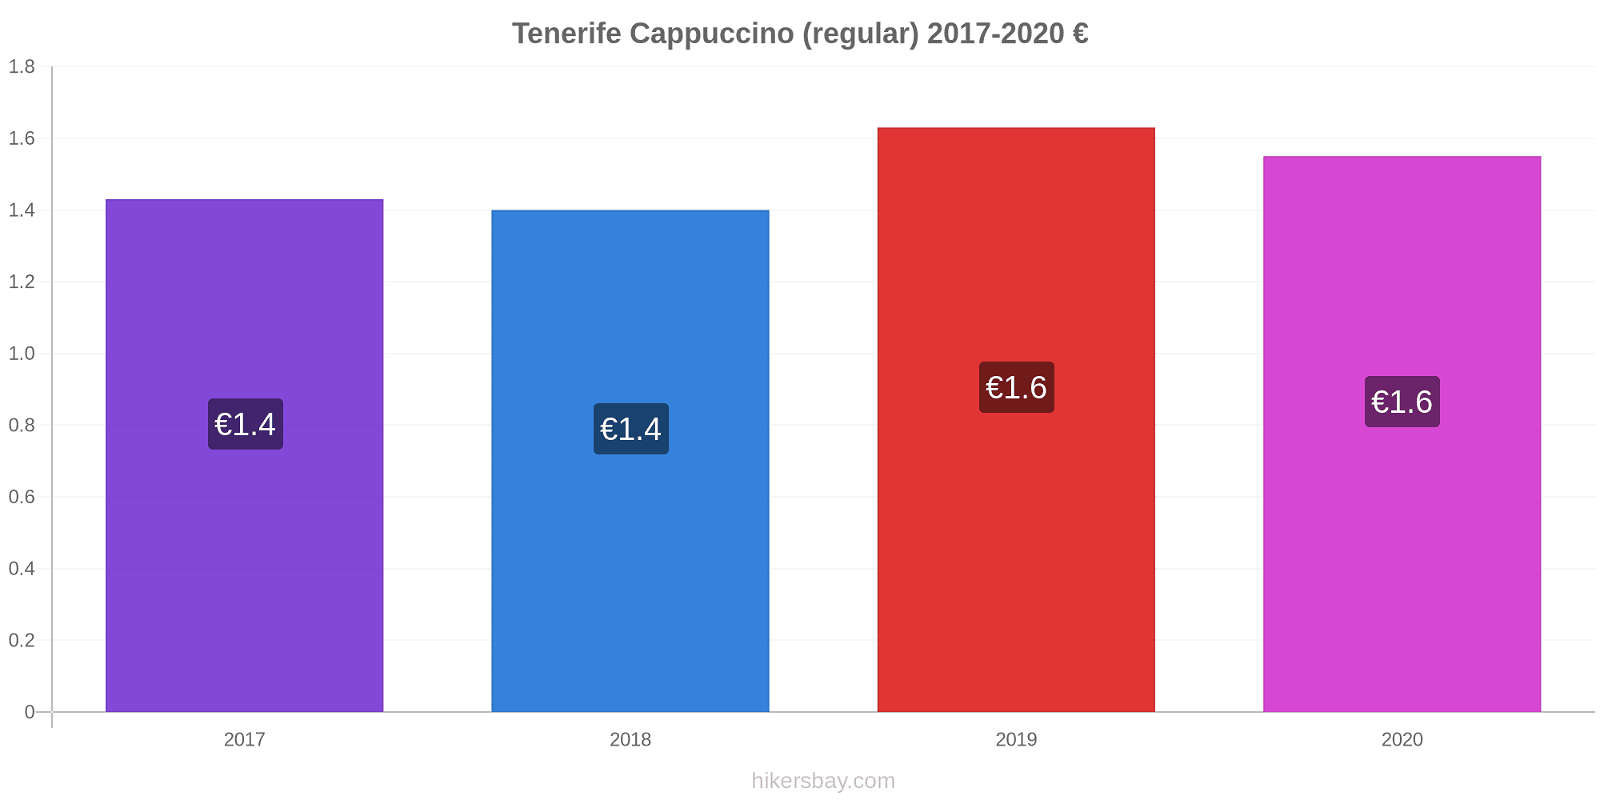 Tenerife variação de preço Capuccino (regular) hikersbay.com